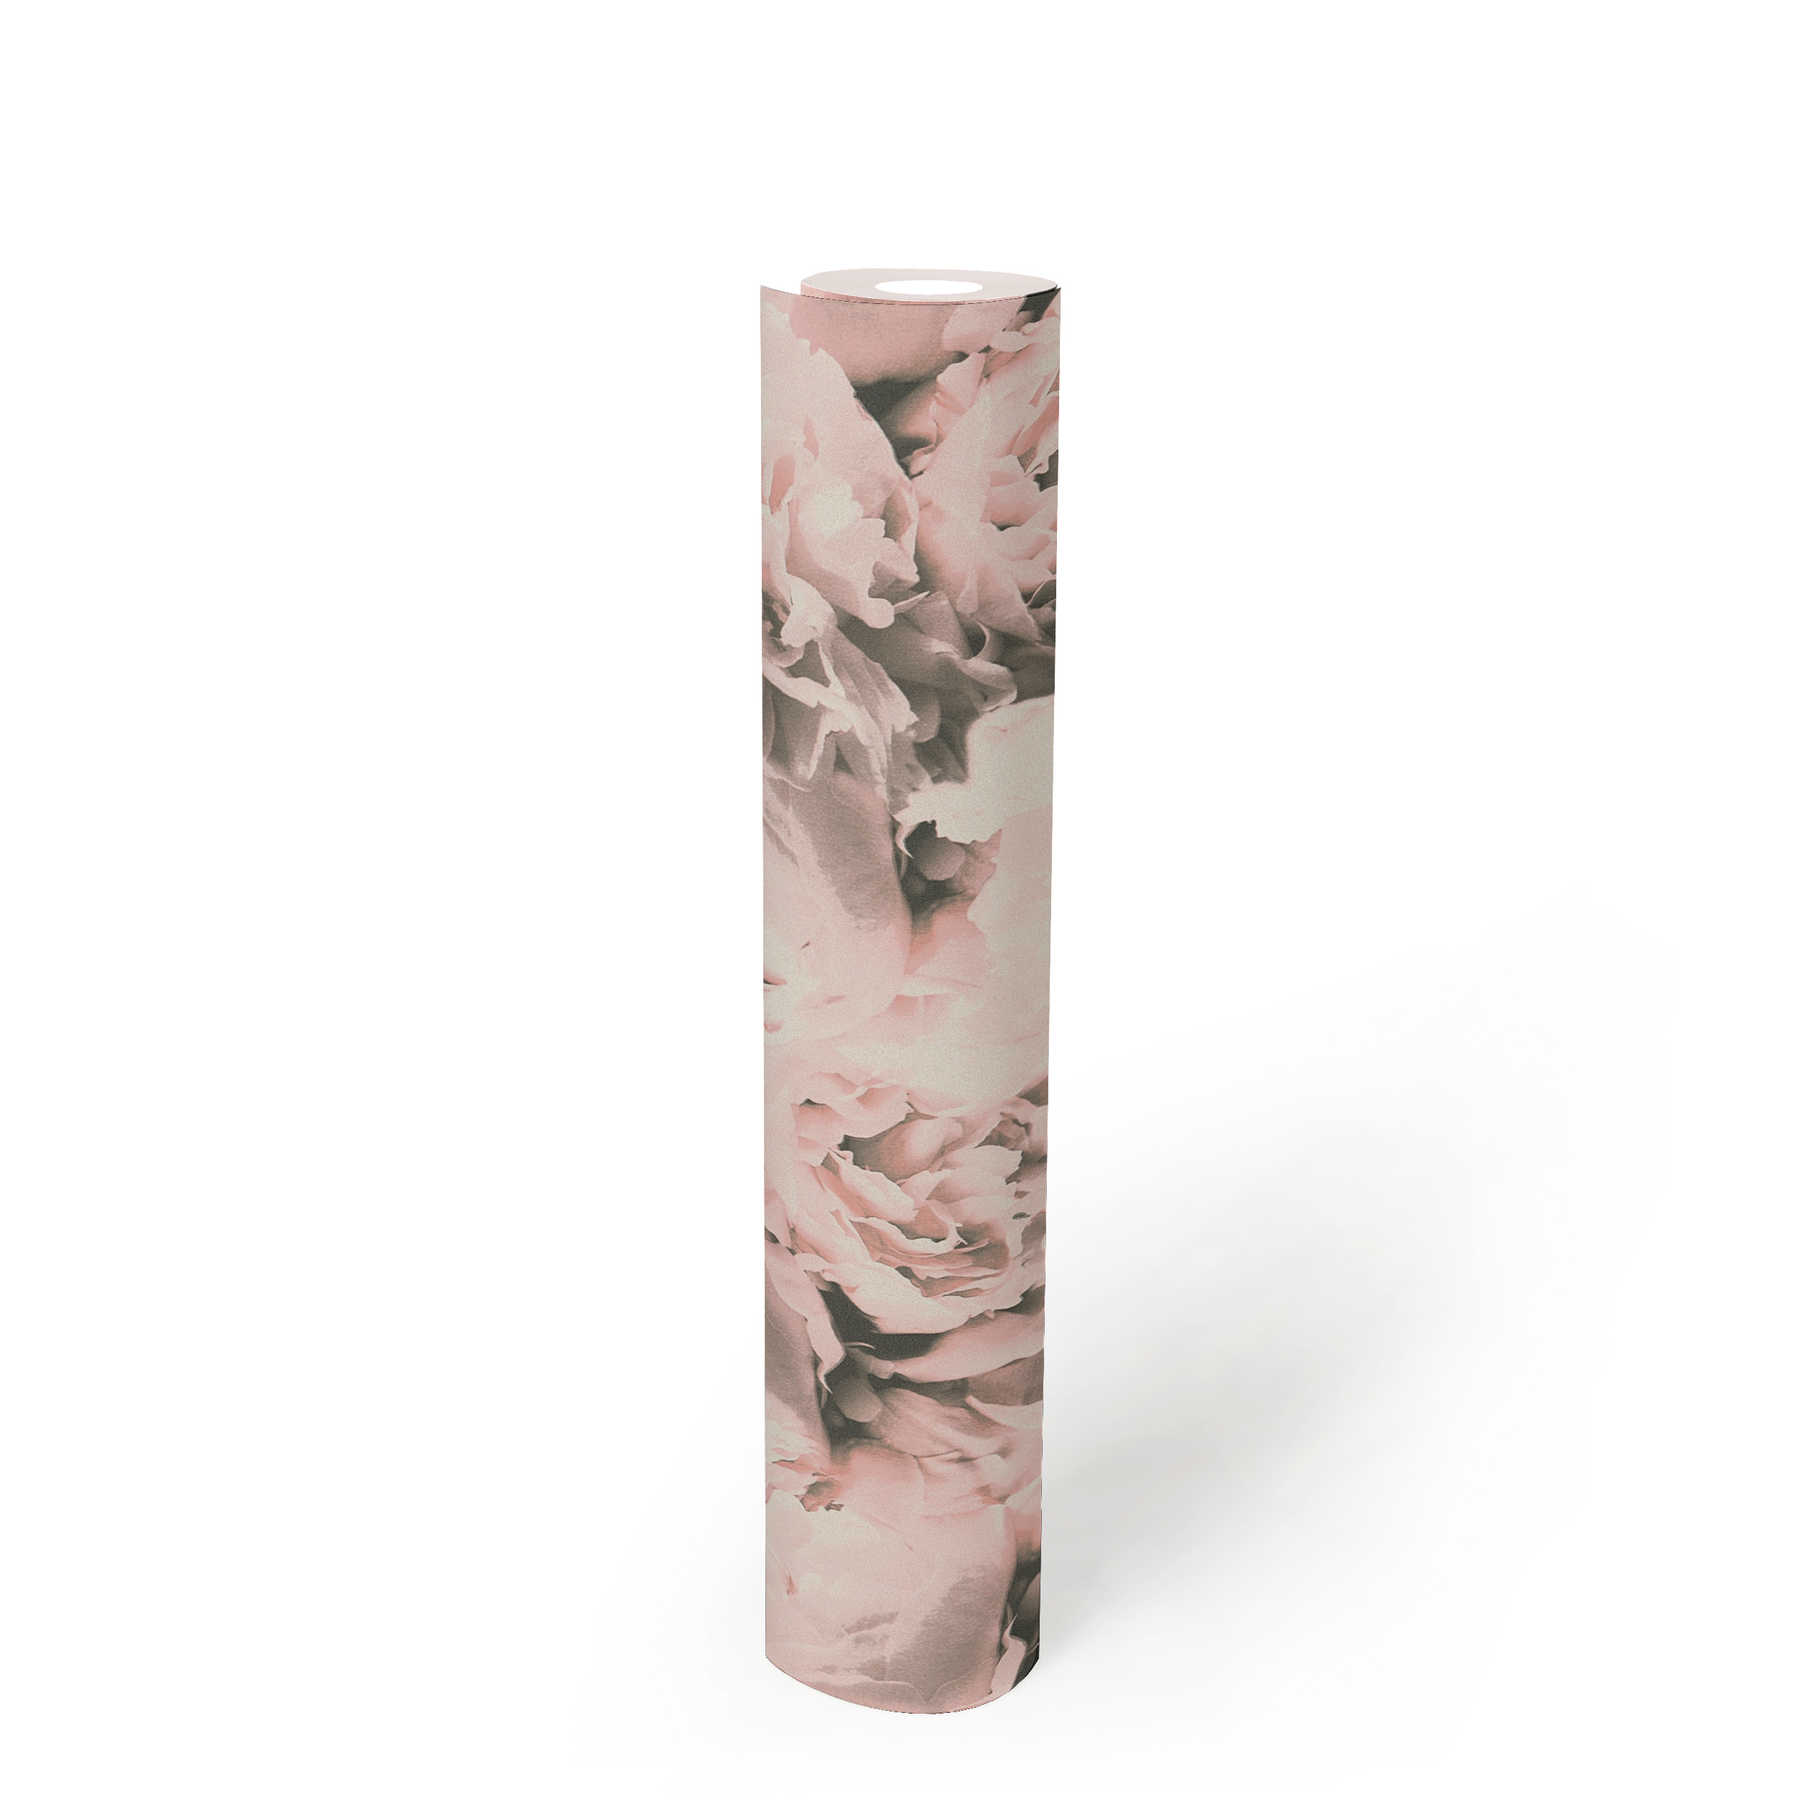             Carta da parati floreale a rose con effetto shimmer - rosa, crema
        